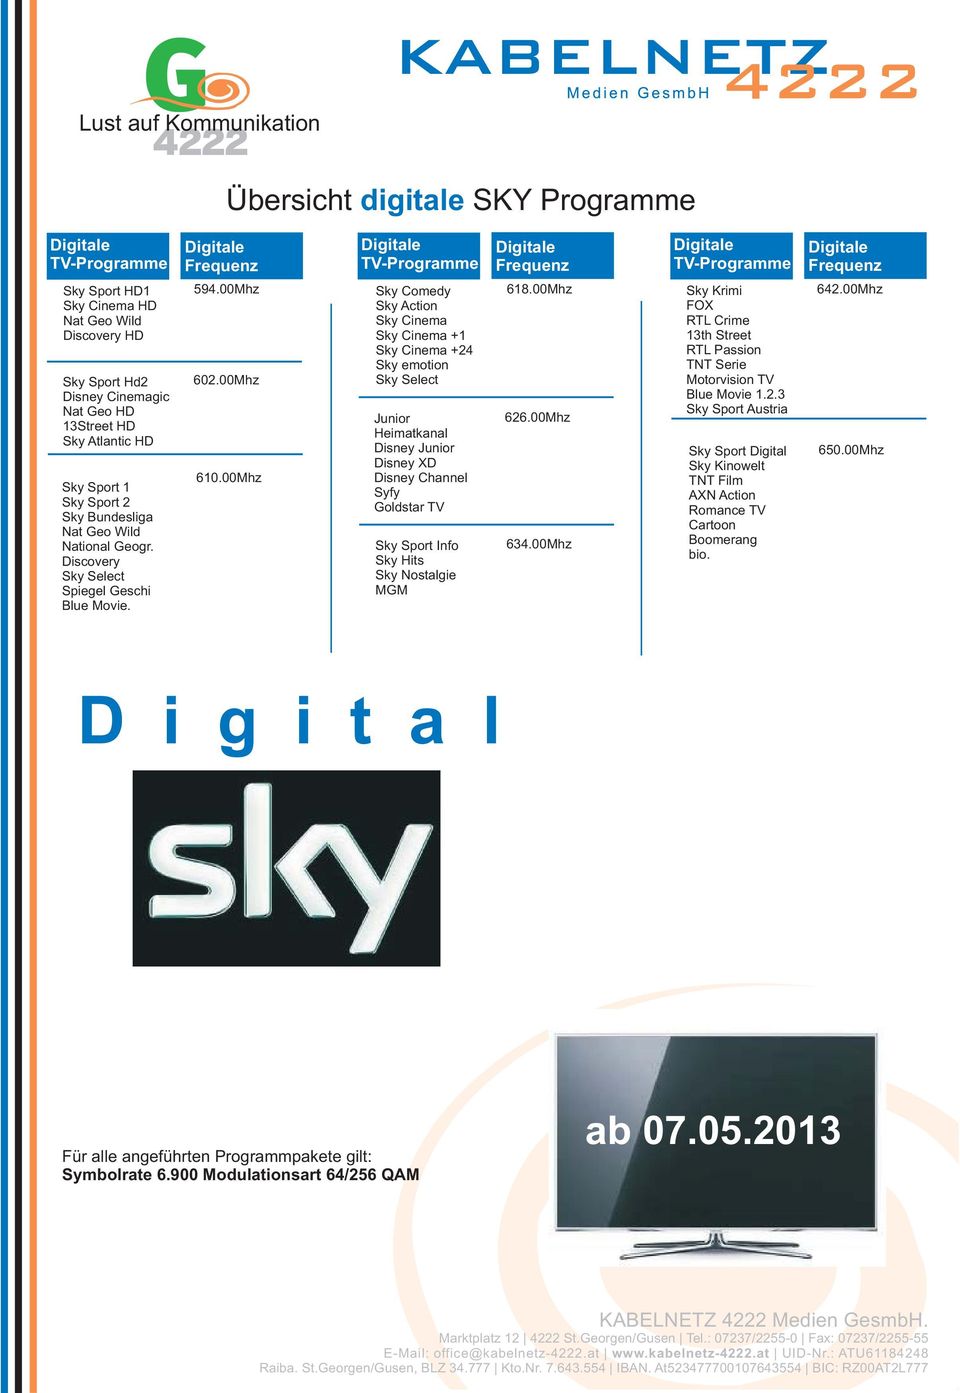 00Mhz Sky Comedy Sky Action Sky Cinema Sky Cinema +1 Sky Cinema +24 Sky emotion Sky Select Junior Heimatkanal Disney Junior Disney XD Disney Channel Syfy Goldstar TV Sky Sport Info Sky Hits Sky